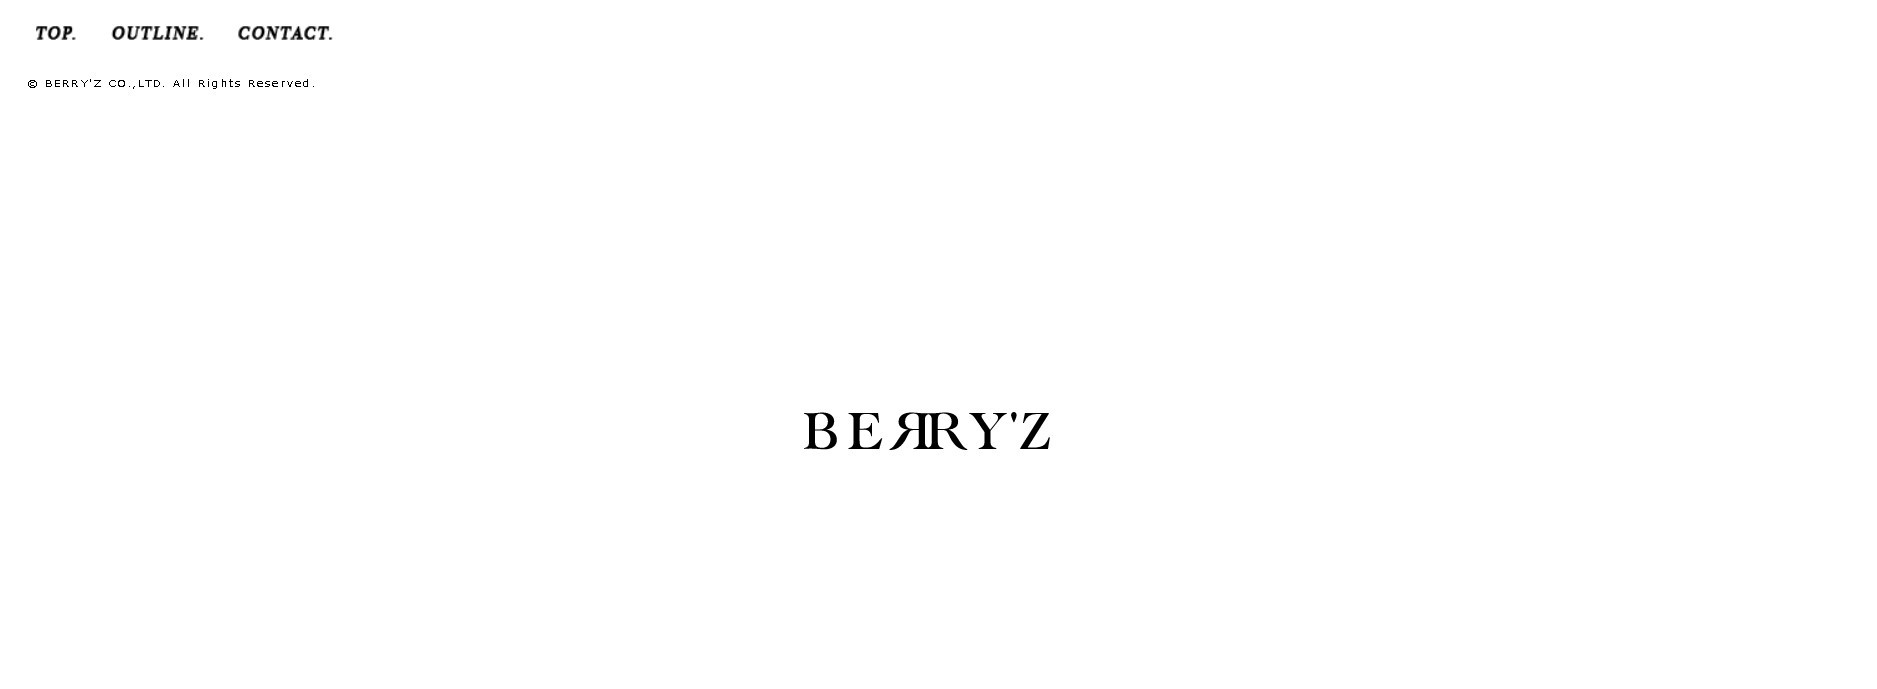 BERRY'Z株式会社のBERRY'Zサービス